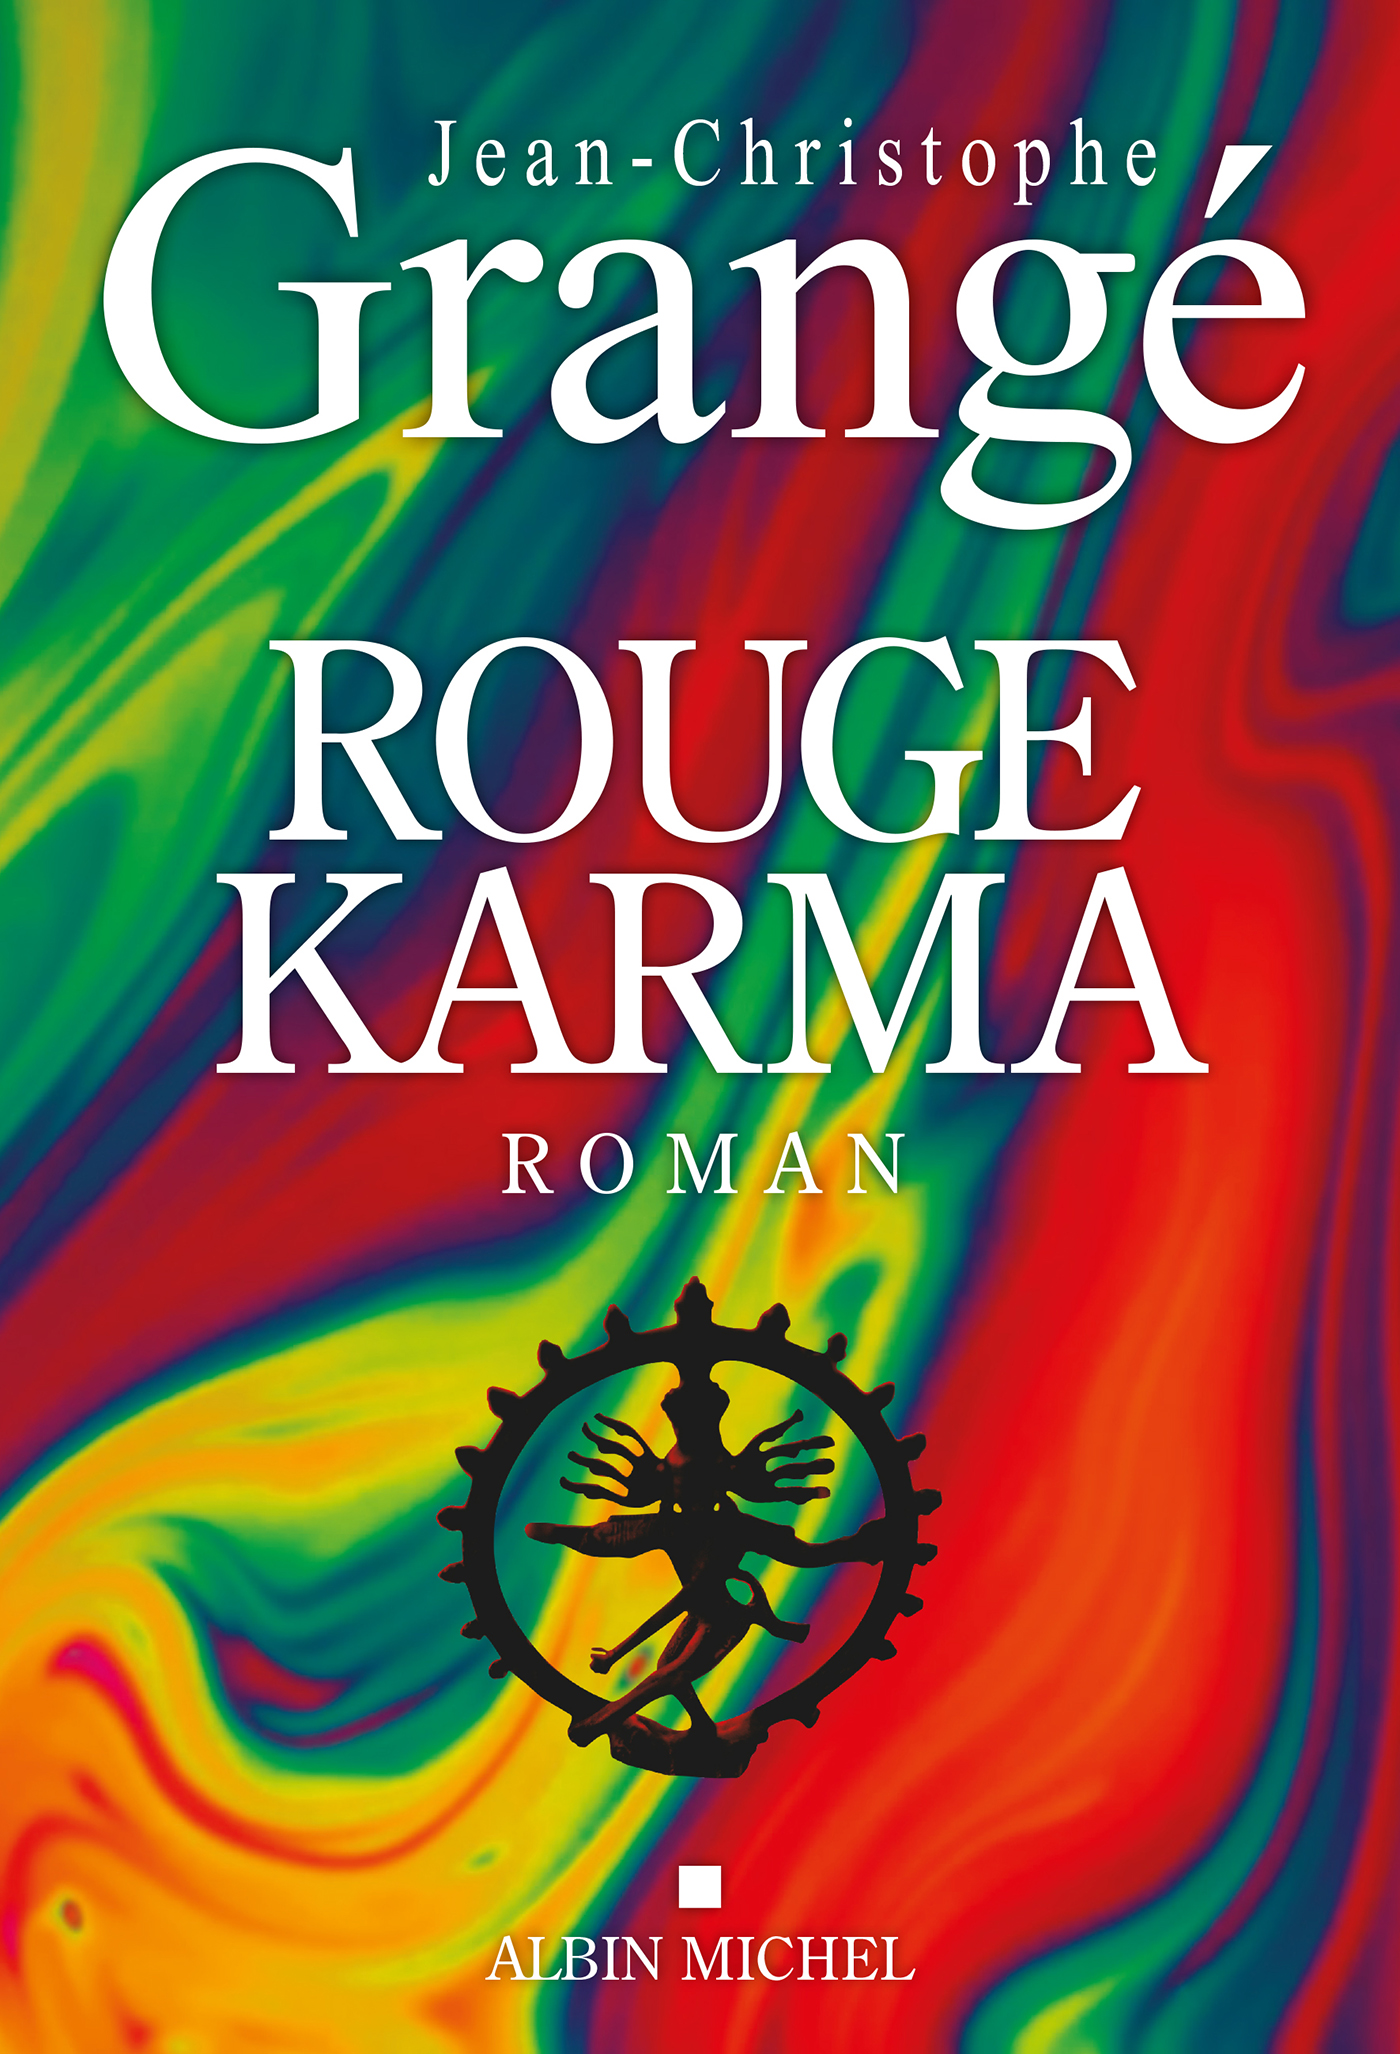 Couverture du livre Rouge karma